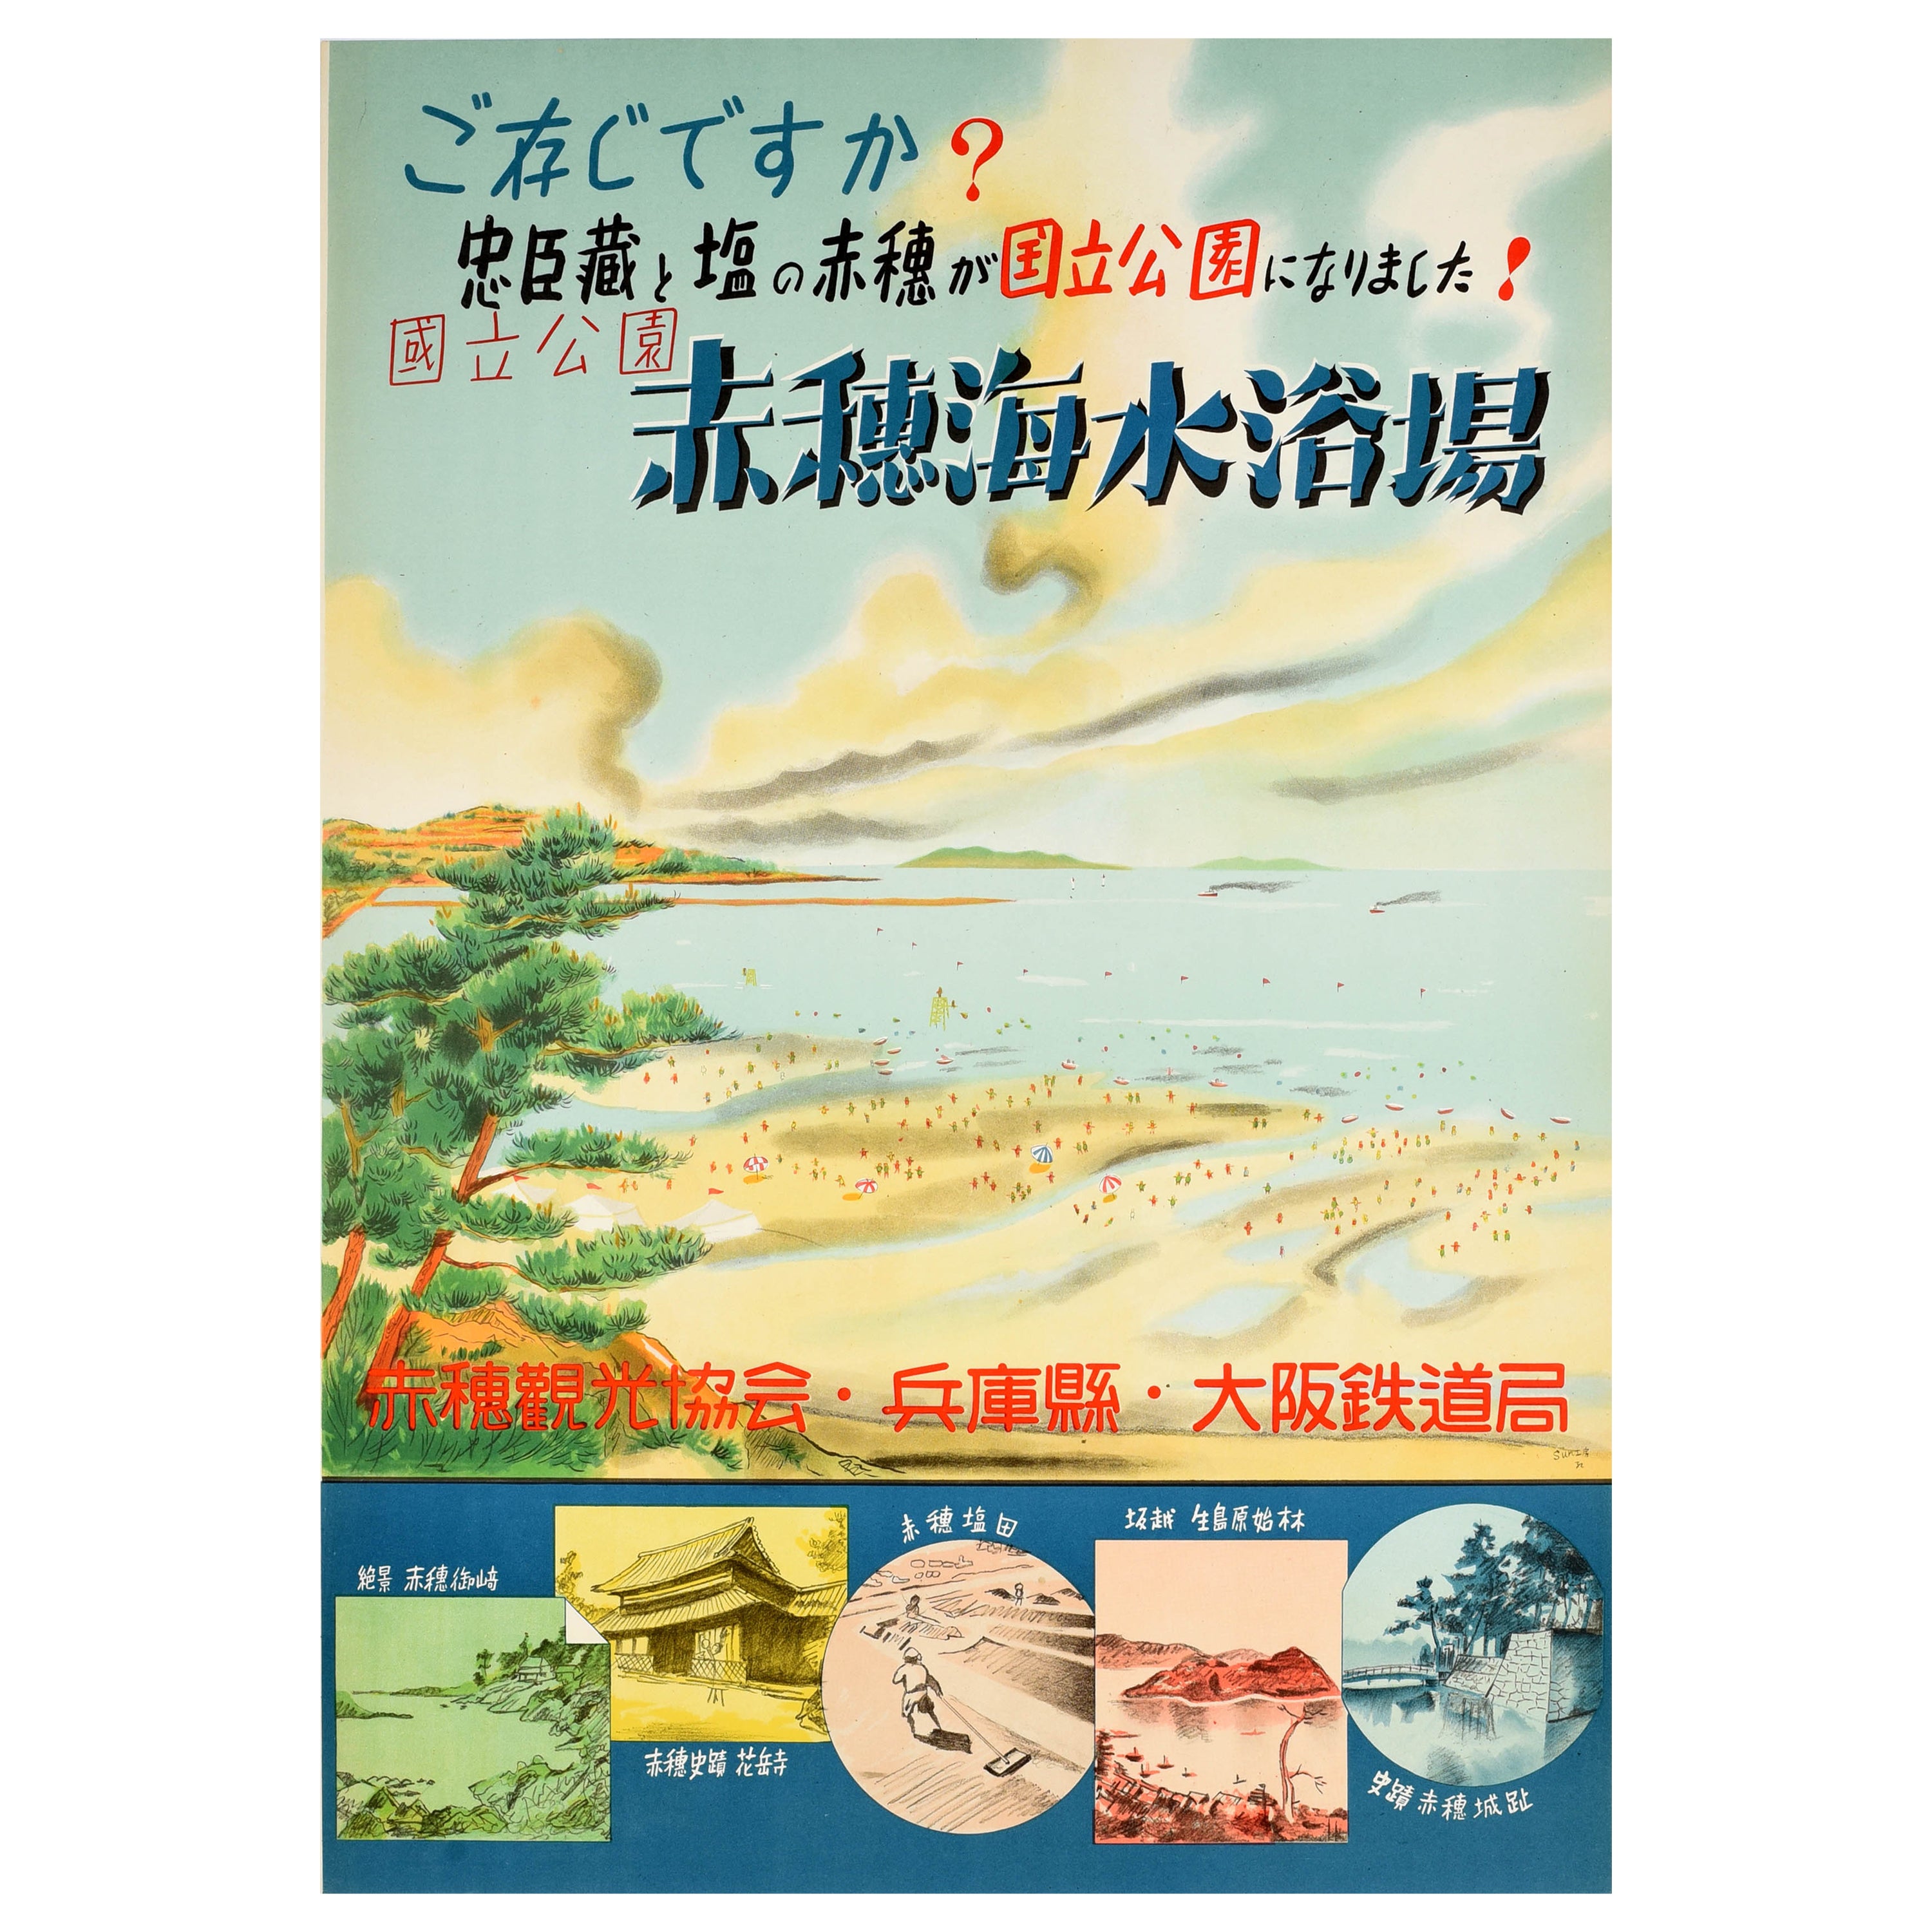 Original-Vintage-Reiseplakat Fukuura Strand Japan, szenische Küstenansicht, Inselkunst